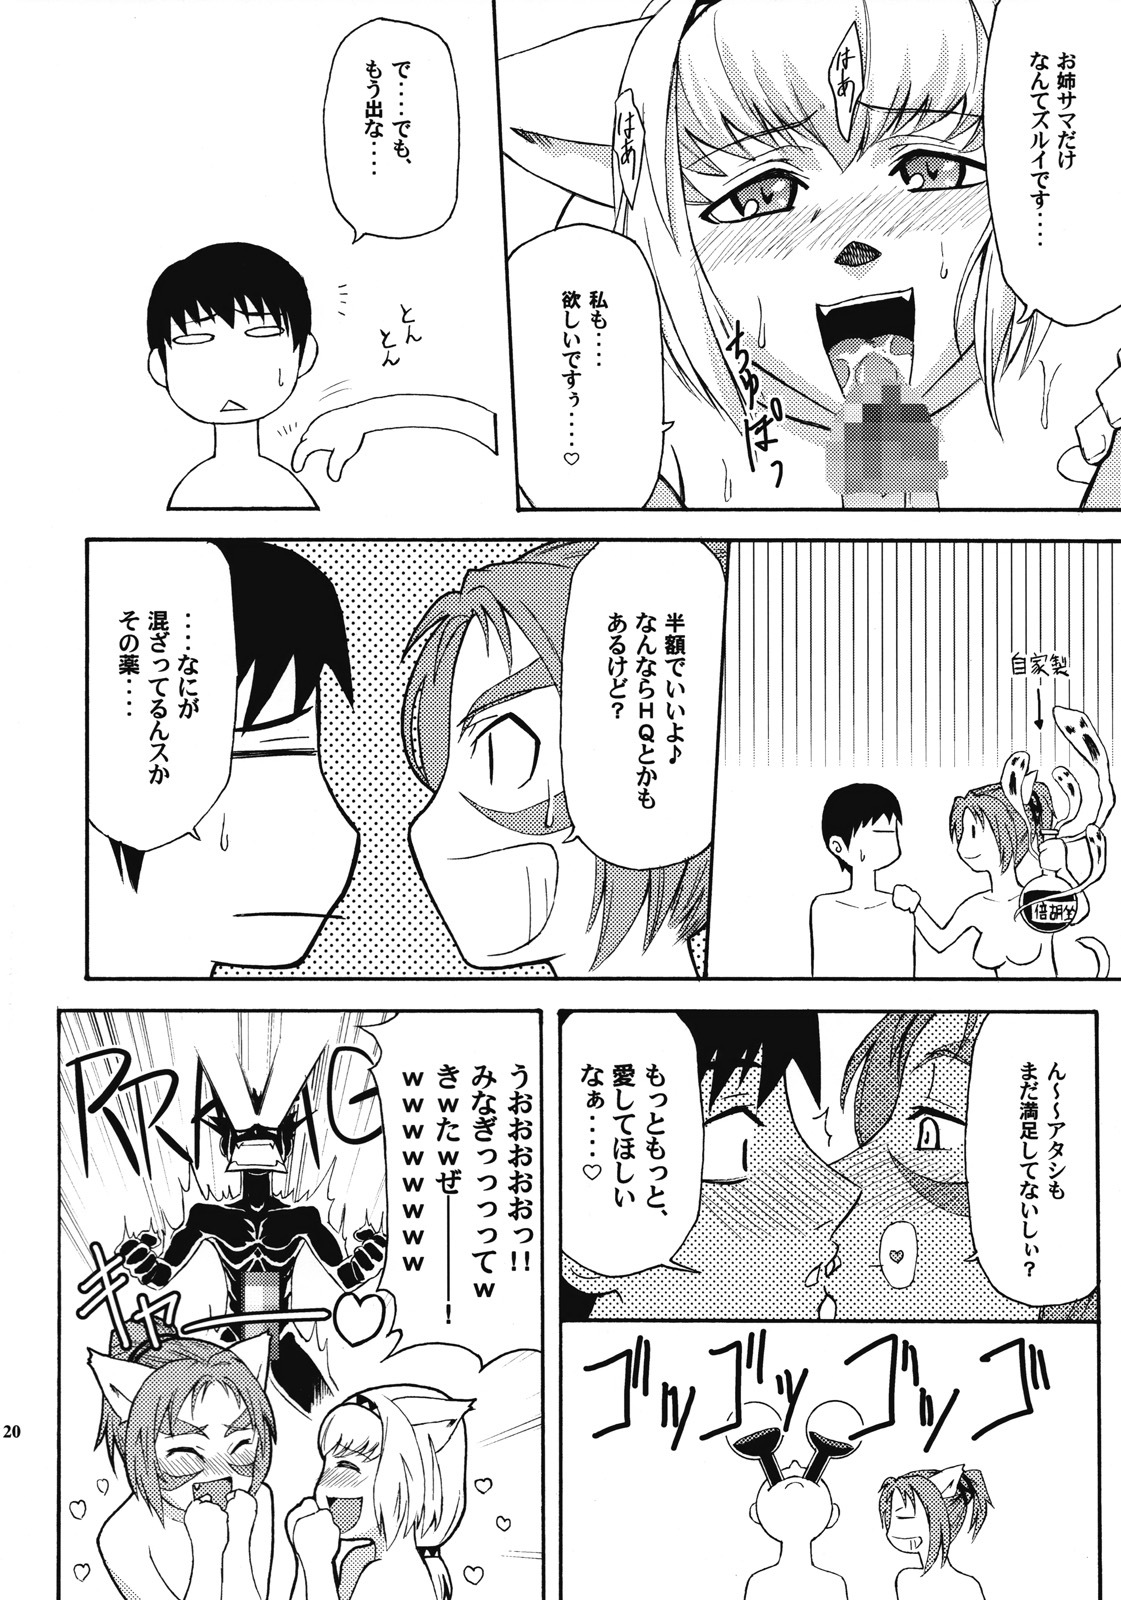 [ARCHENEMY (Kasumi Ryo)] Ein Joghurt wie ein Honig-Dessert. EXTENDED EDITION (Final Fantasy XI) page 19 full